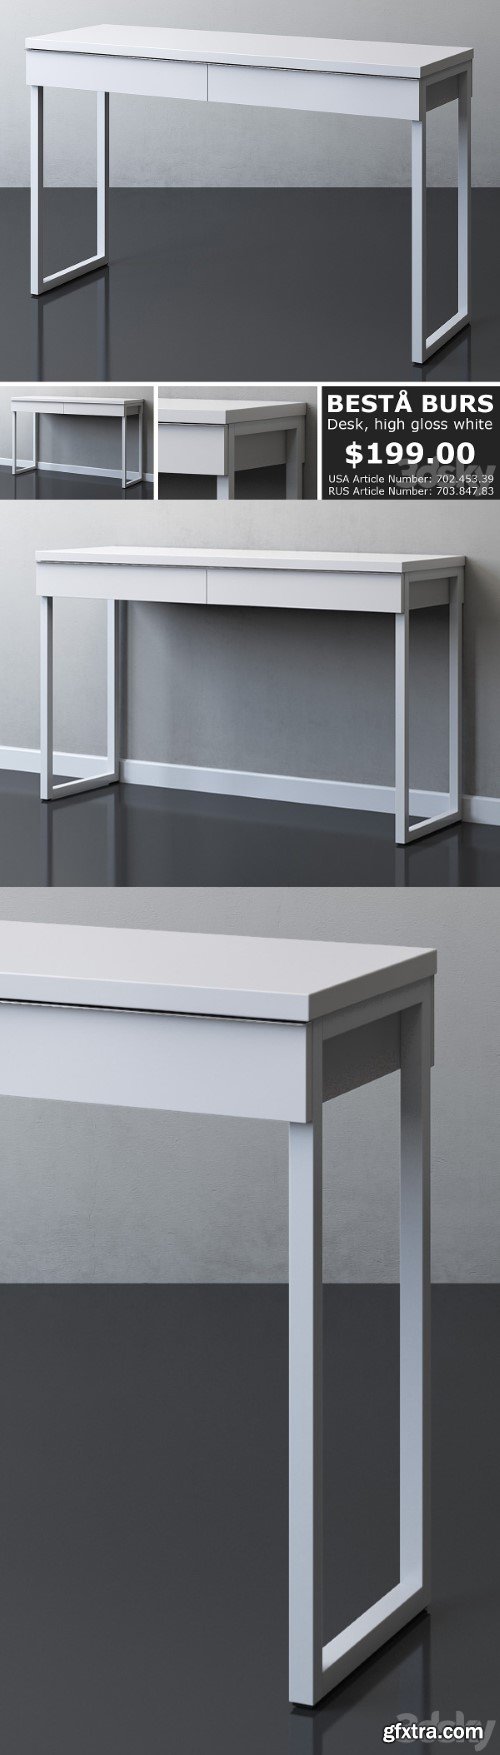 IKEA BESTA BURS Desk | Vray